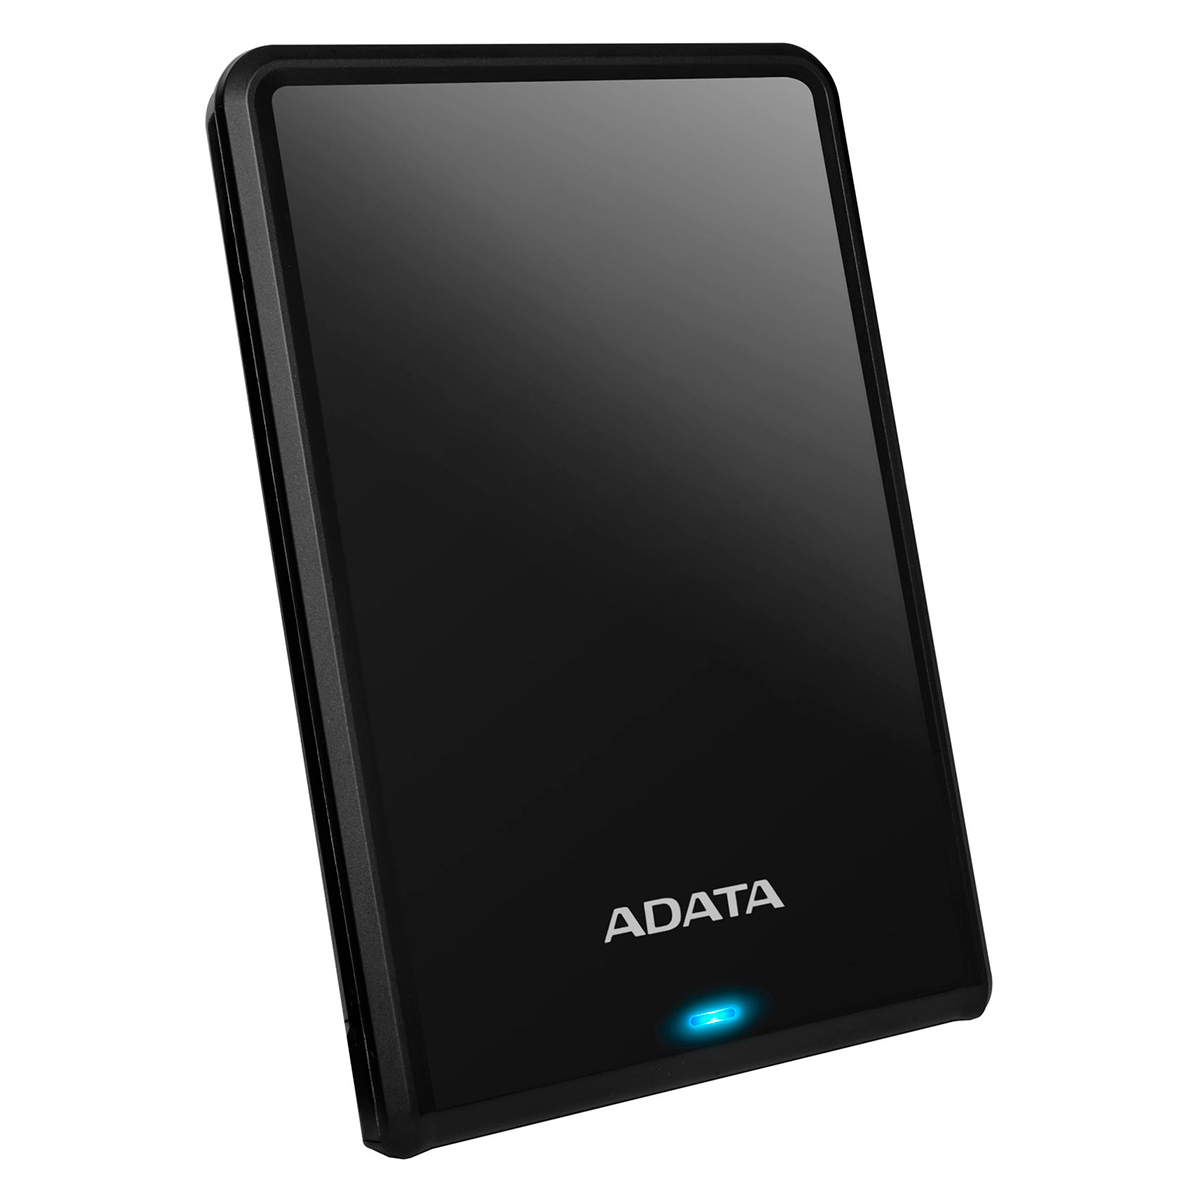 HD Externo 1TB Portátil Adata HV620S - Design Slim - USB 3.1 - Preto - AHV620S-1TU31-CBK